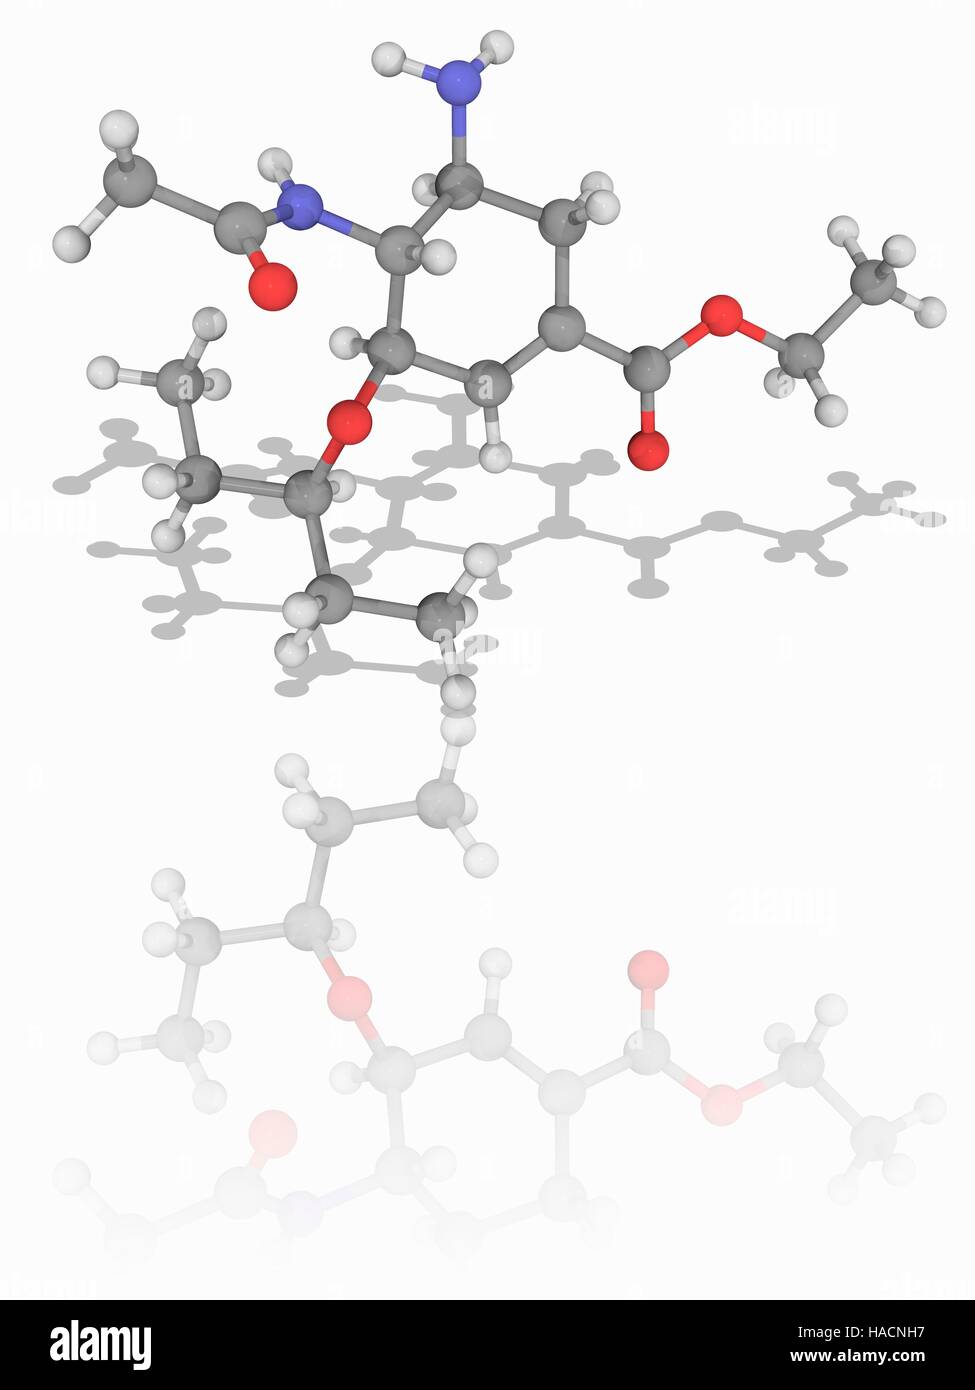 Oseltamivir. Molekülmodell antivirale Medikament Oseltamivir (C16. H28. N2. O4), zur Behandlung und Vorbeugung von Grippe Virus verwendet. Es ist als Tamiflu vermarktet. Atome als Kugeln dargestellt werden und sind farblich gekennzeichnet: Kohlenstoff (grau), Wasserstoff (weiß), Stickstoff (blau) und Sauerstoff (rot). Abbildung. Stockfoto